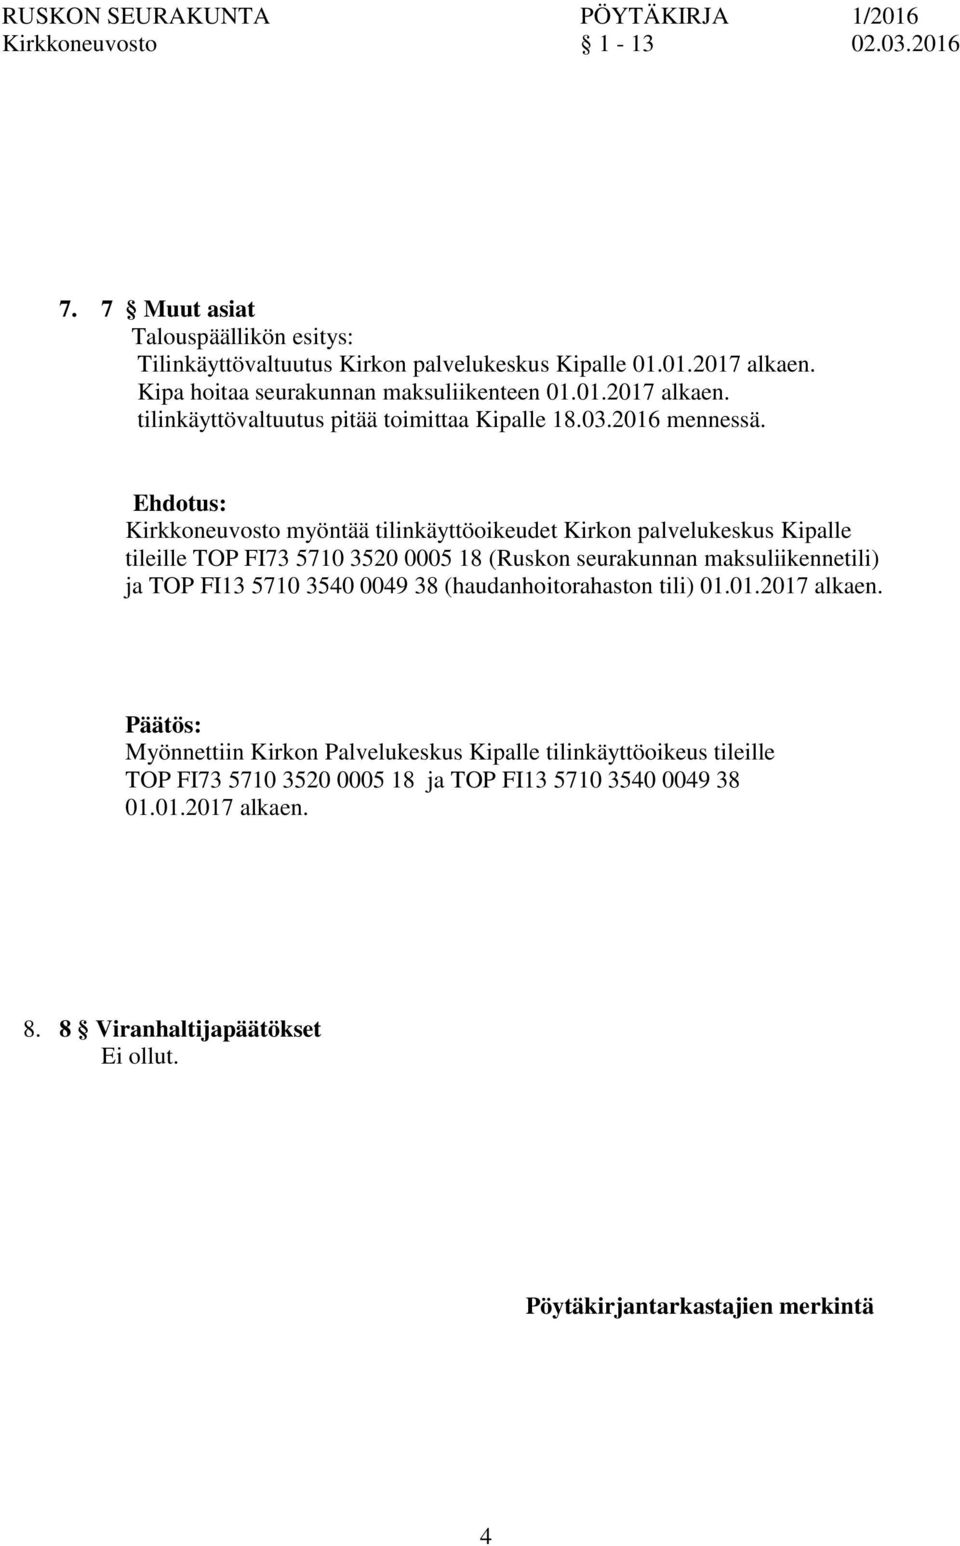 Kirkkeuvosto myöntää tilinkäyttöoikeudet Kirk palvelukeskus Kipalle tileille TOP FI73 5710 3520 0005 18 (Rusk seurakunnan maksuliikennetili) ja TOP FI13